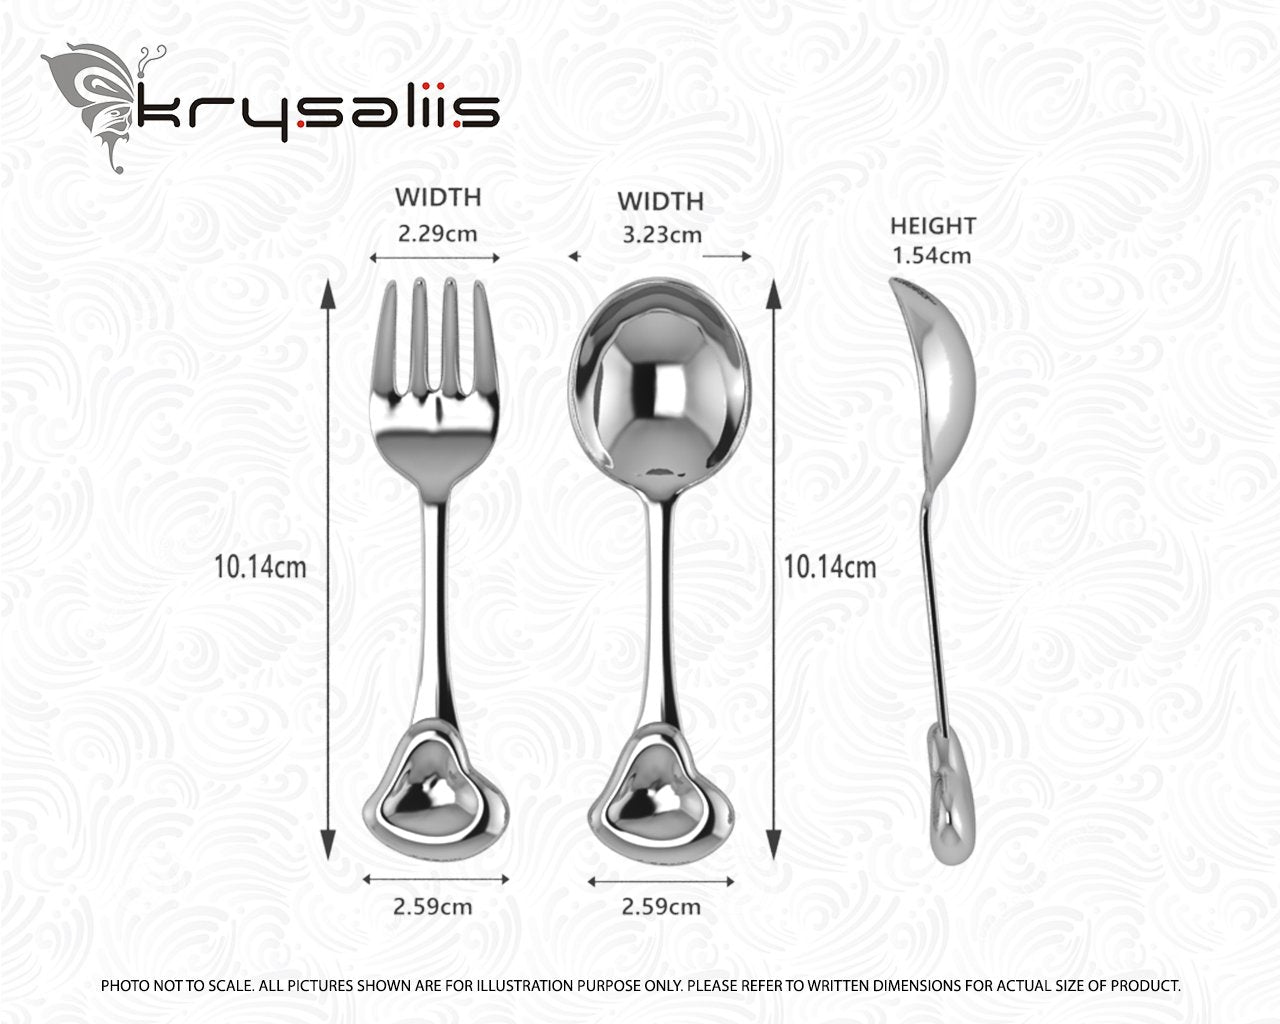 Sterling Silver Sweetheart Baby Spoon & Fork Set by Krysaliis